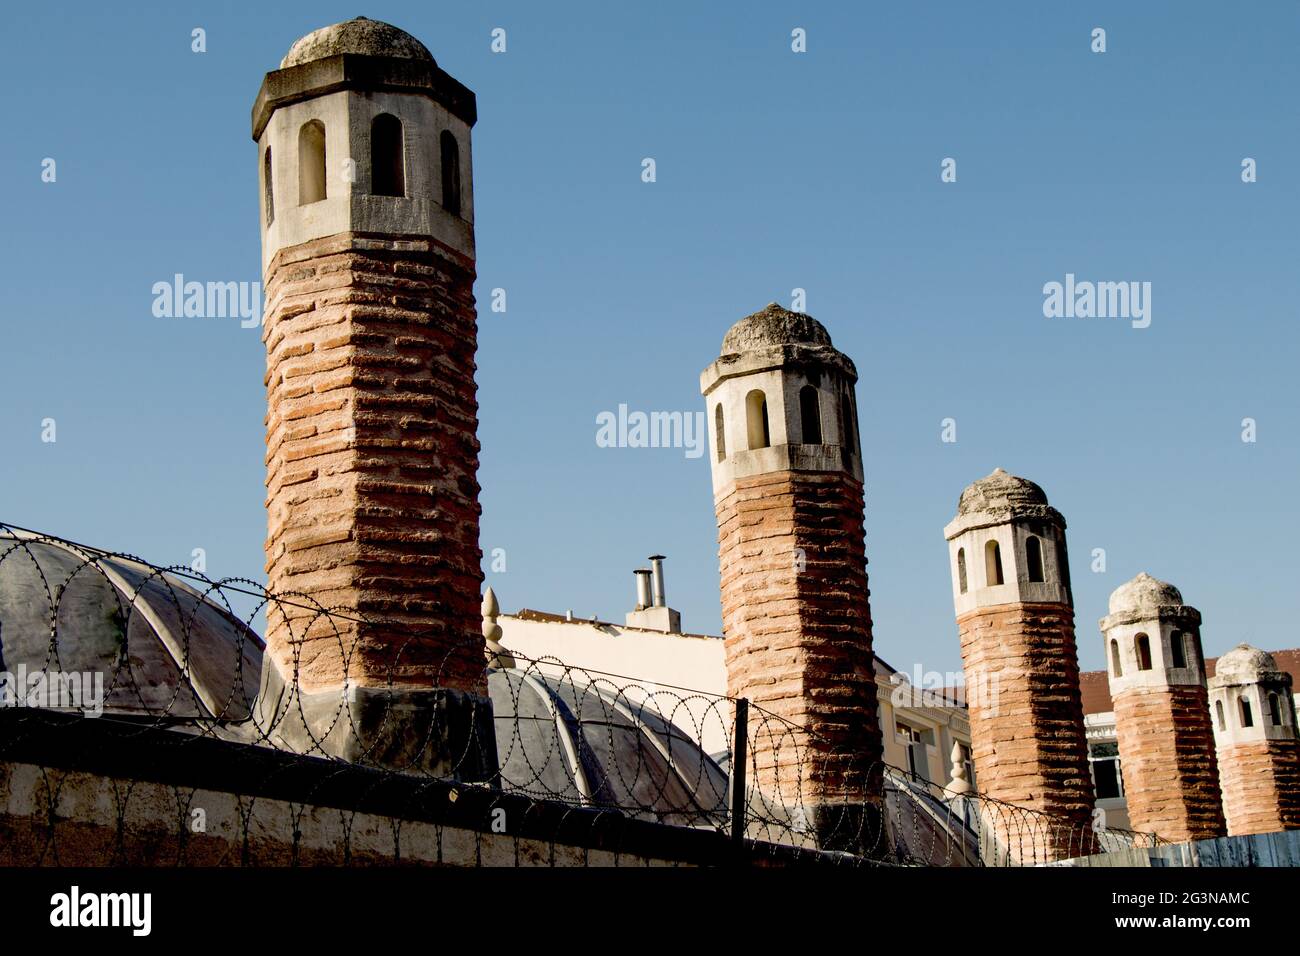 Tetto esempio di architettura Ottomana Turca Foto Stock